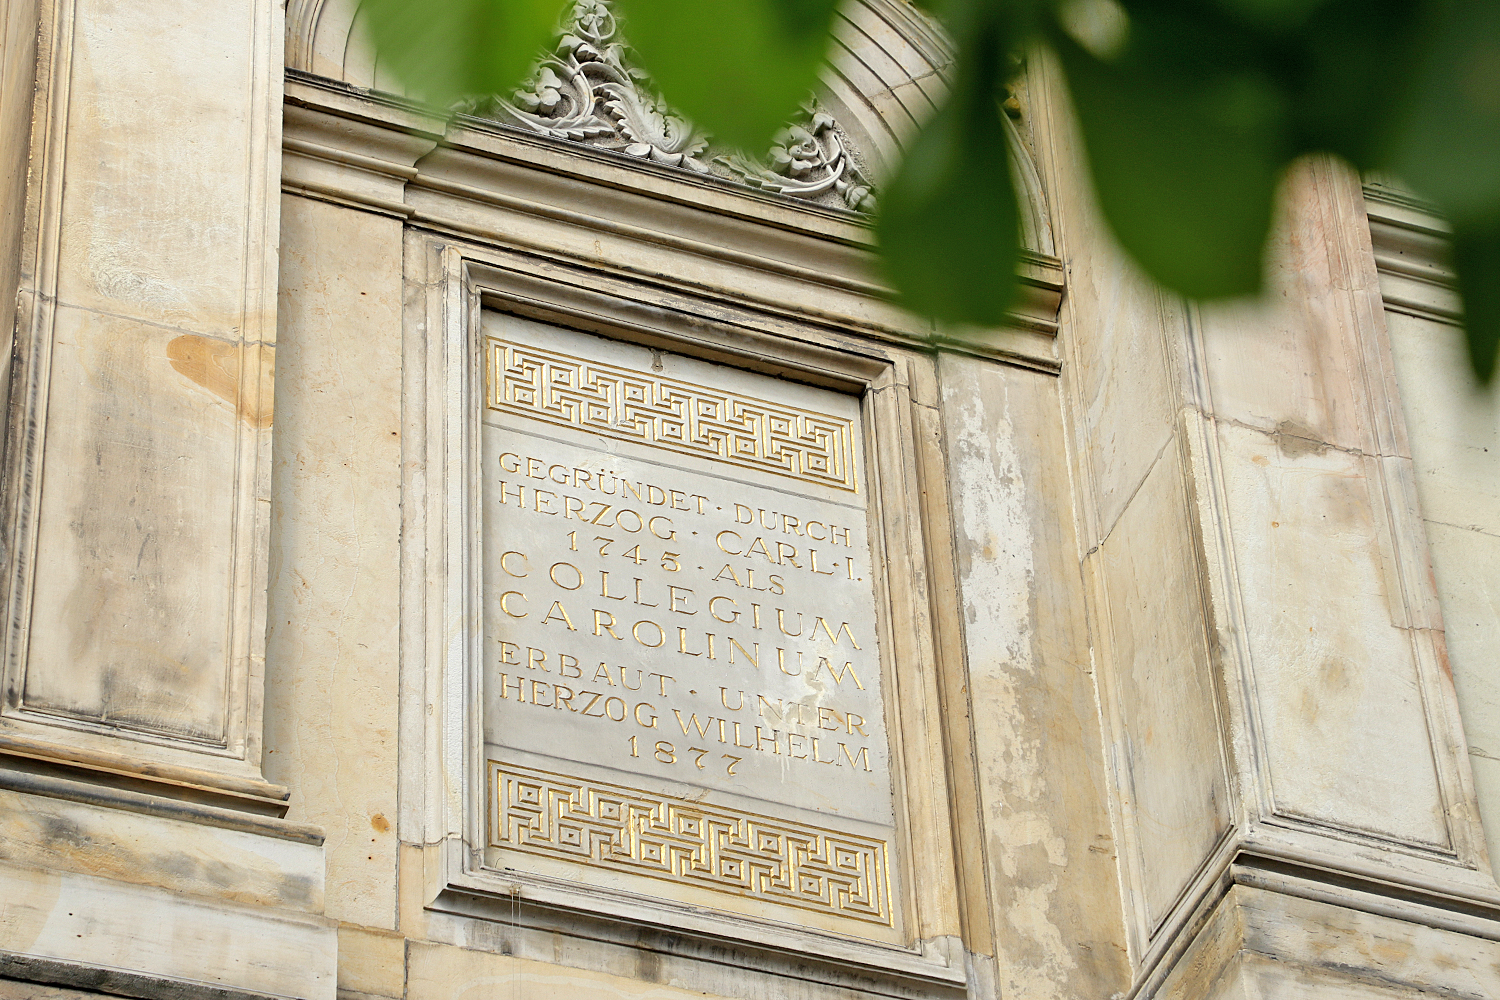 Gegründet 1745: Deutlich sichtbar prangt das Gründungsdatum des Collegium Carolinum an der Fassade des Altgebäudes.